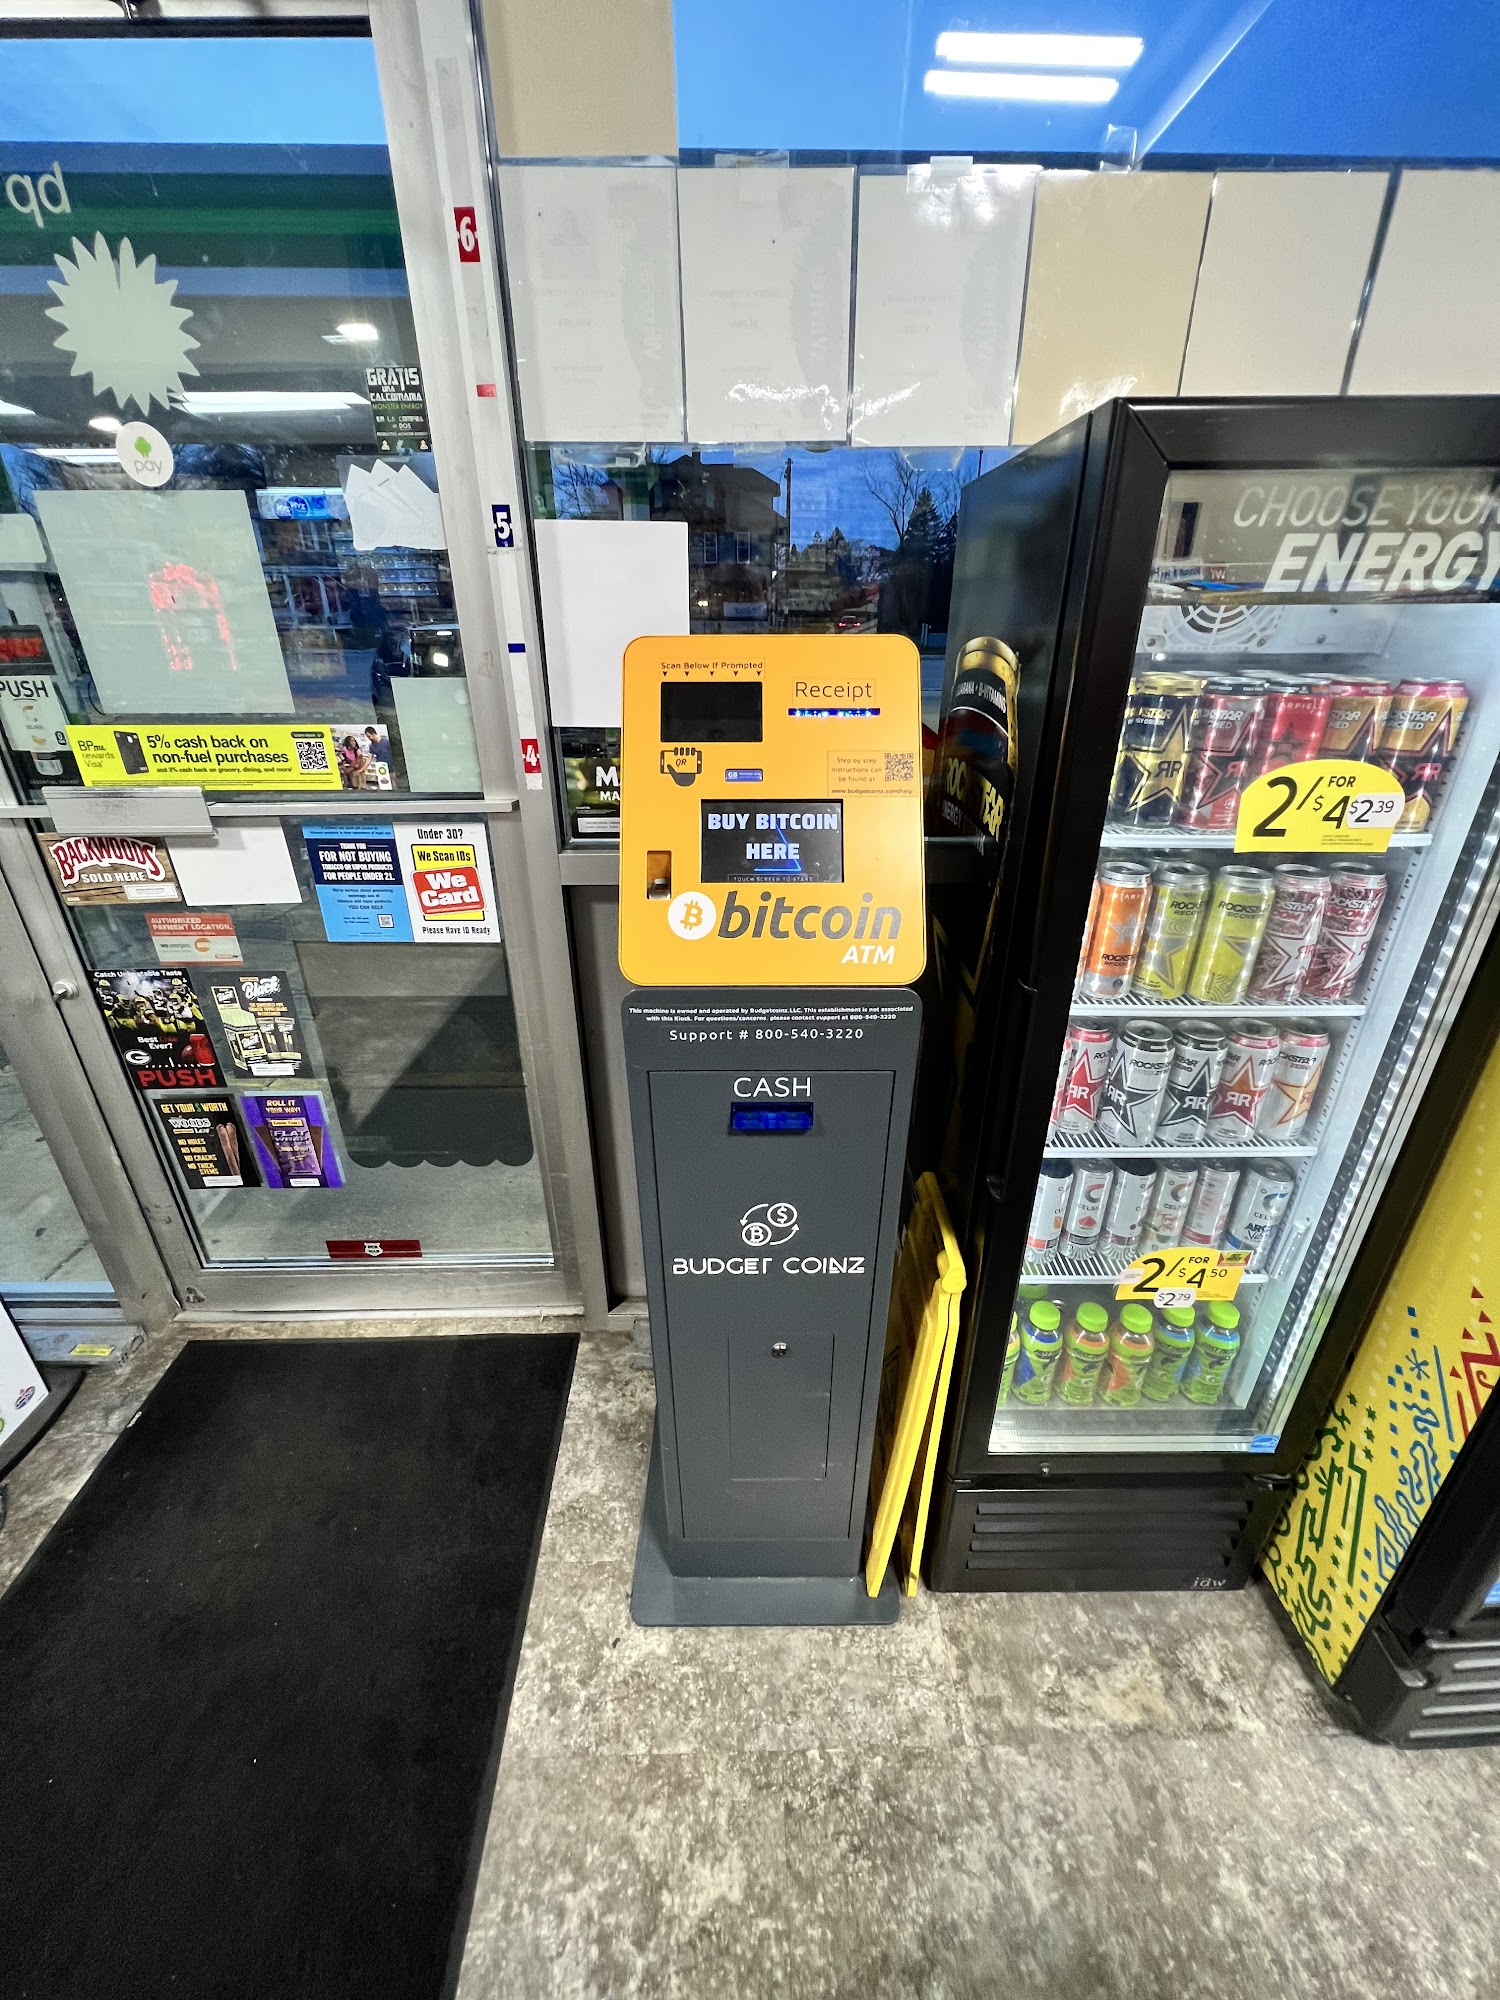 BudgetCoinz Bitcoin ATM